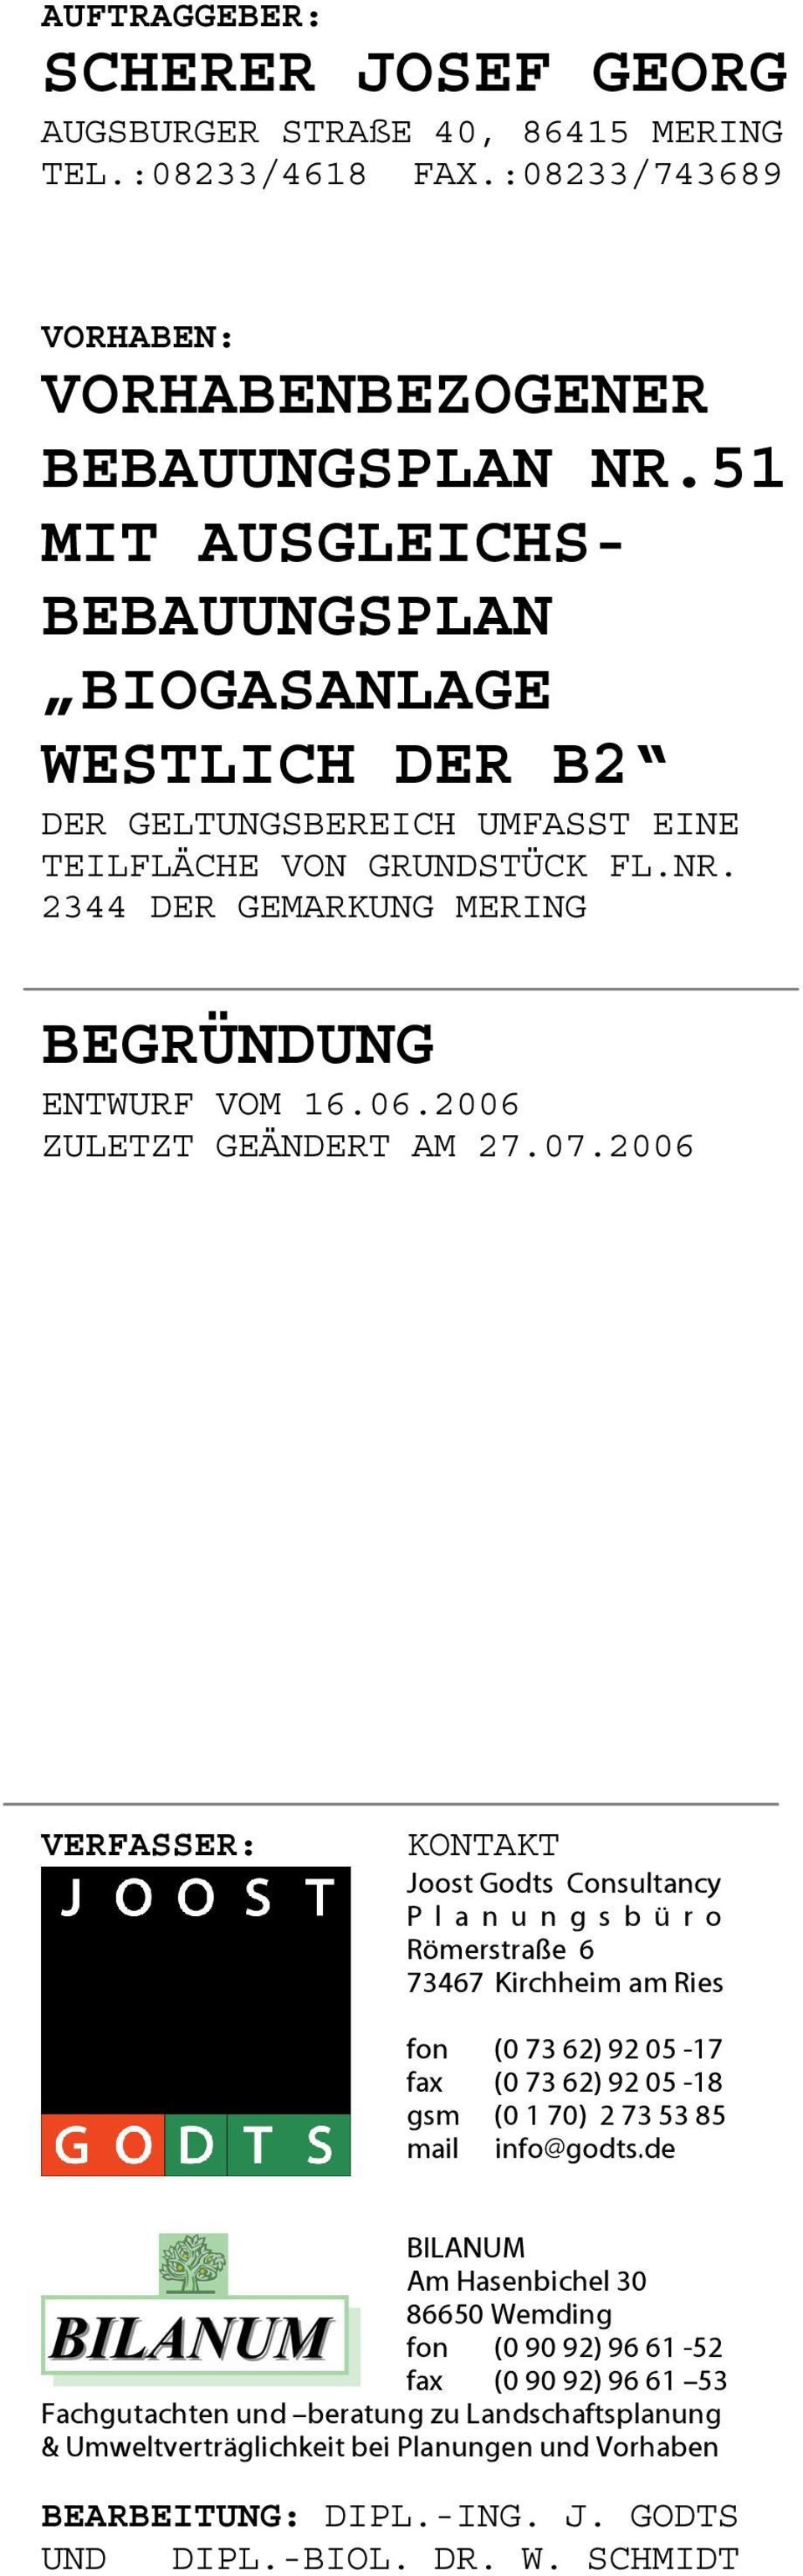 2006 ZULETZT GEÄNDERT AM 27.07.